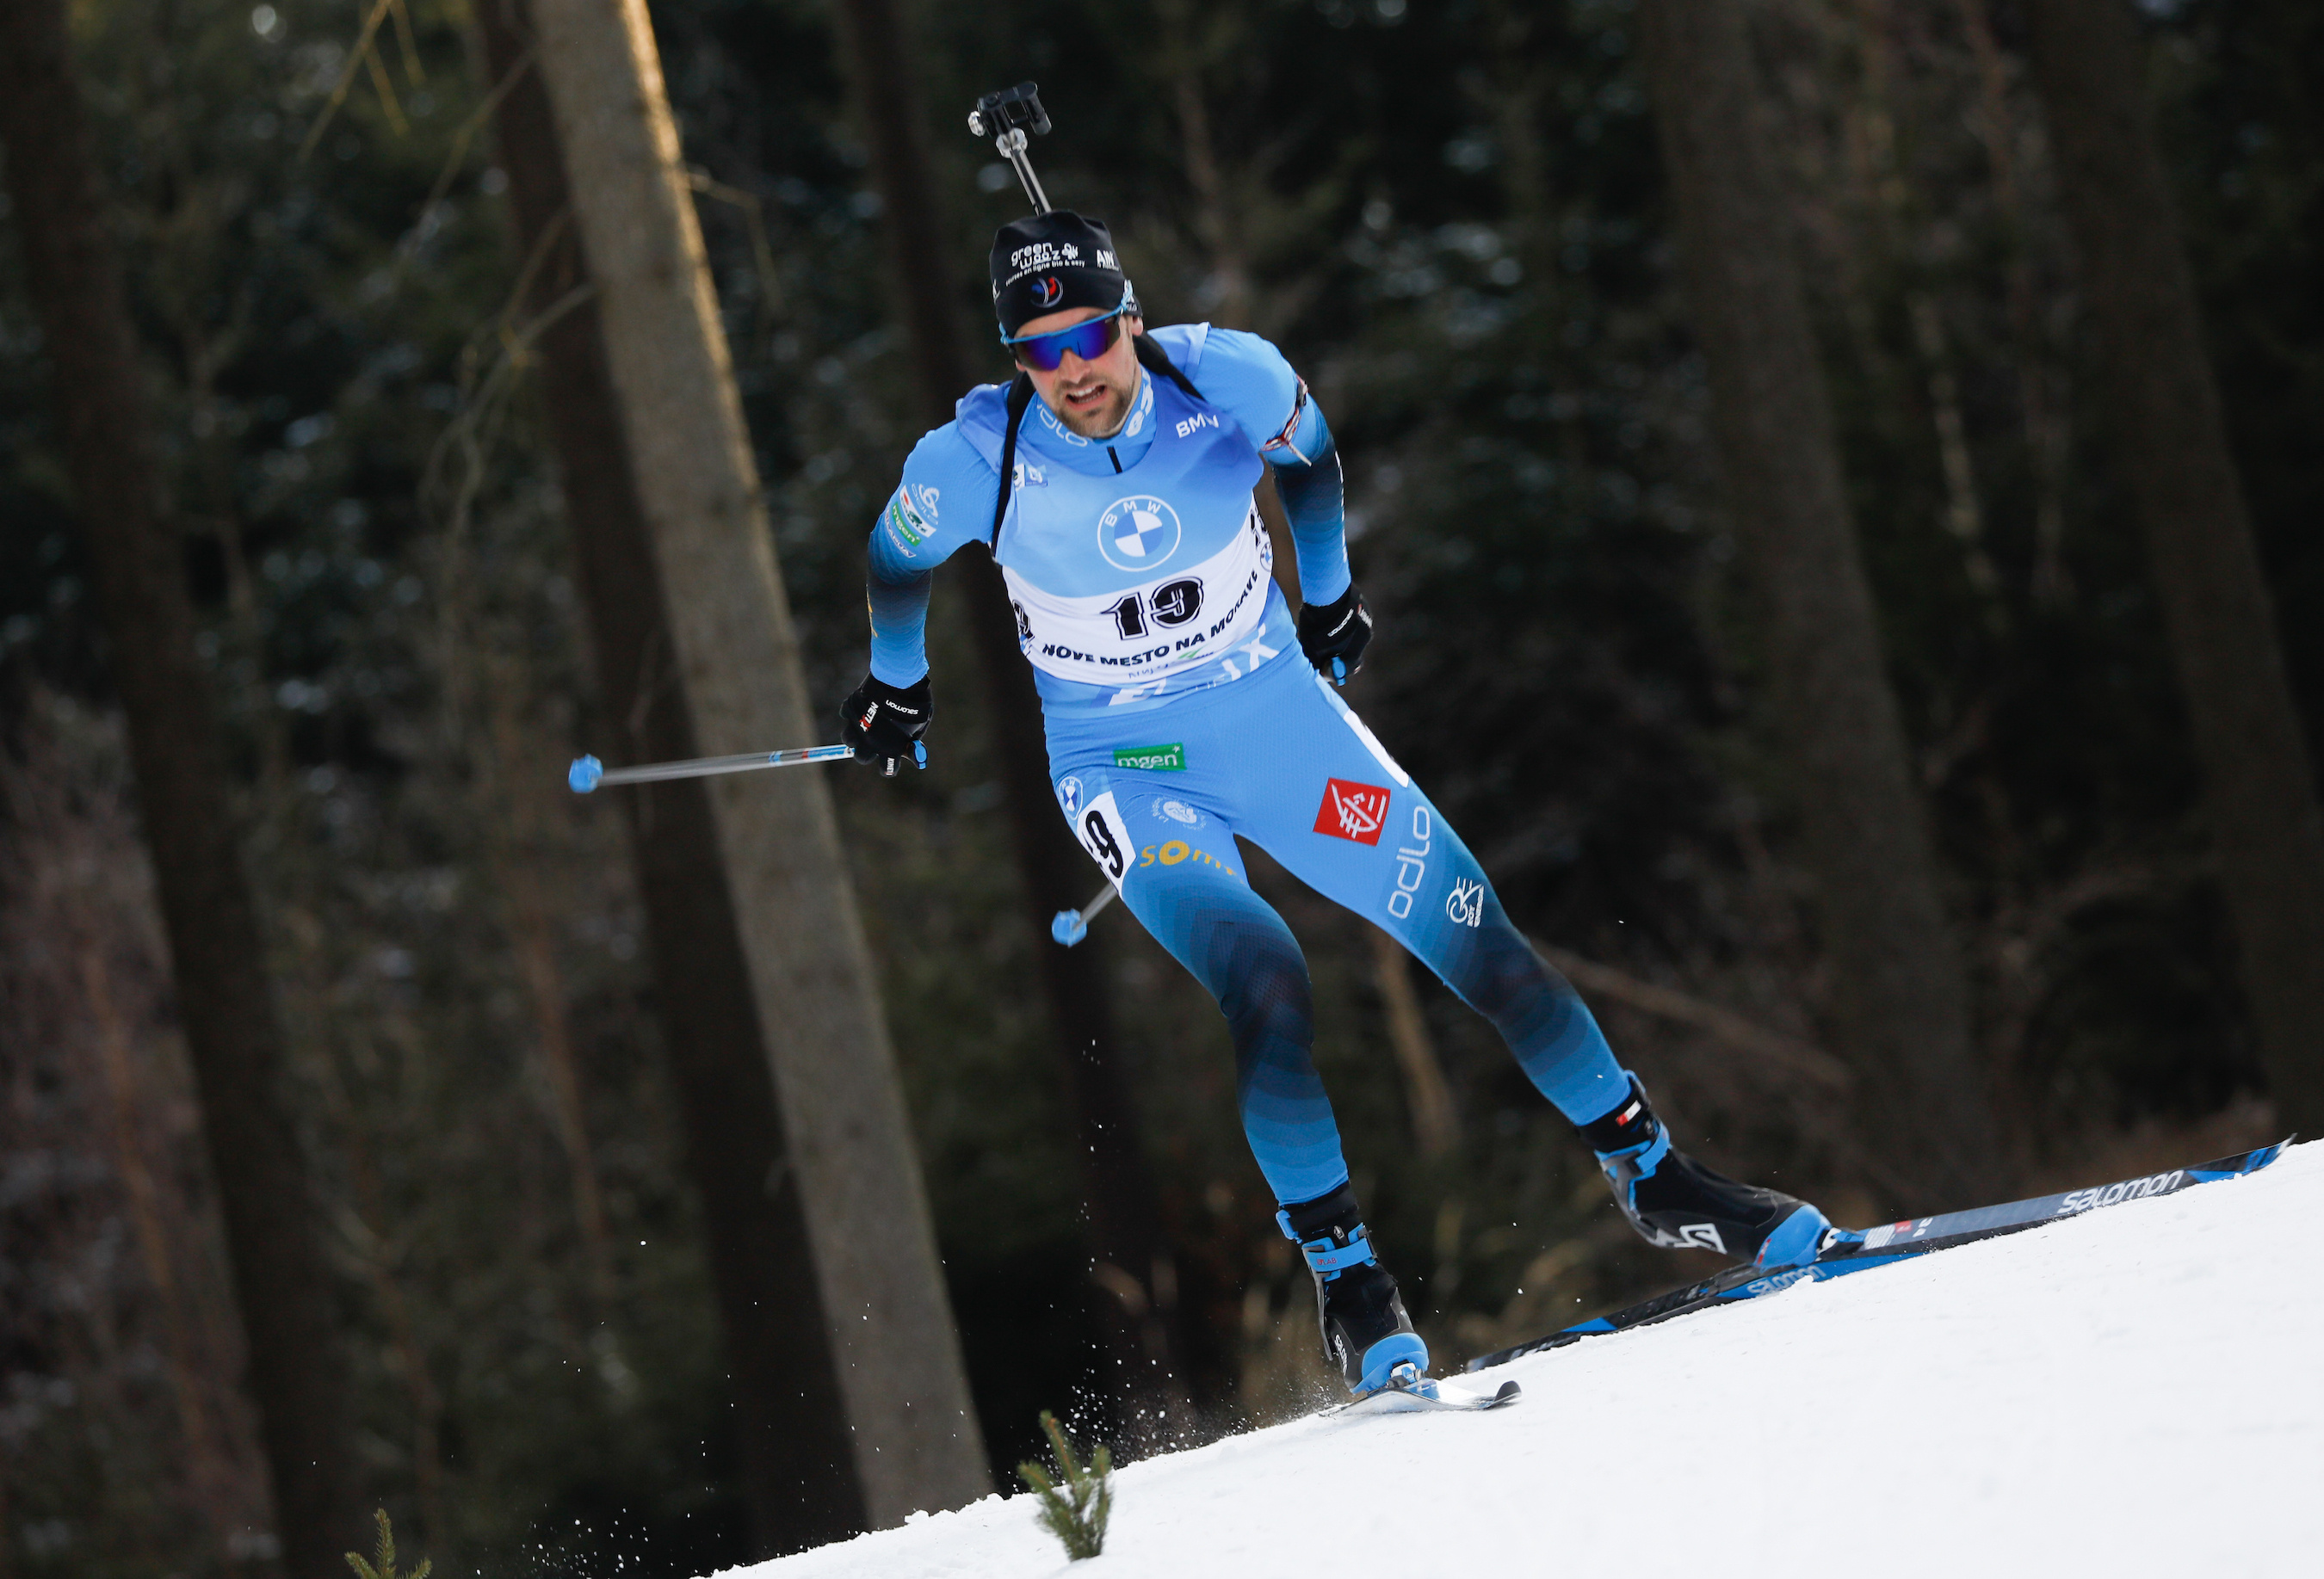 Simon Desthieux, finally rewarded, ski biathlon, sports info, 2700x1840 HD Desktop